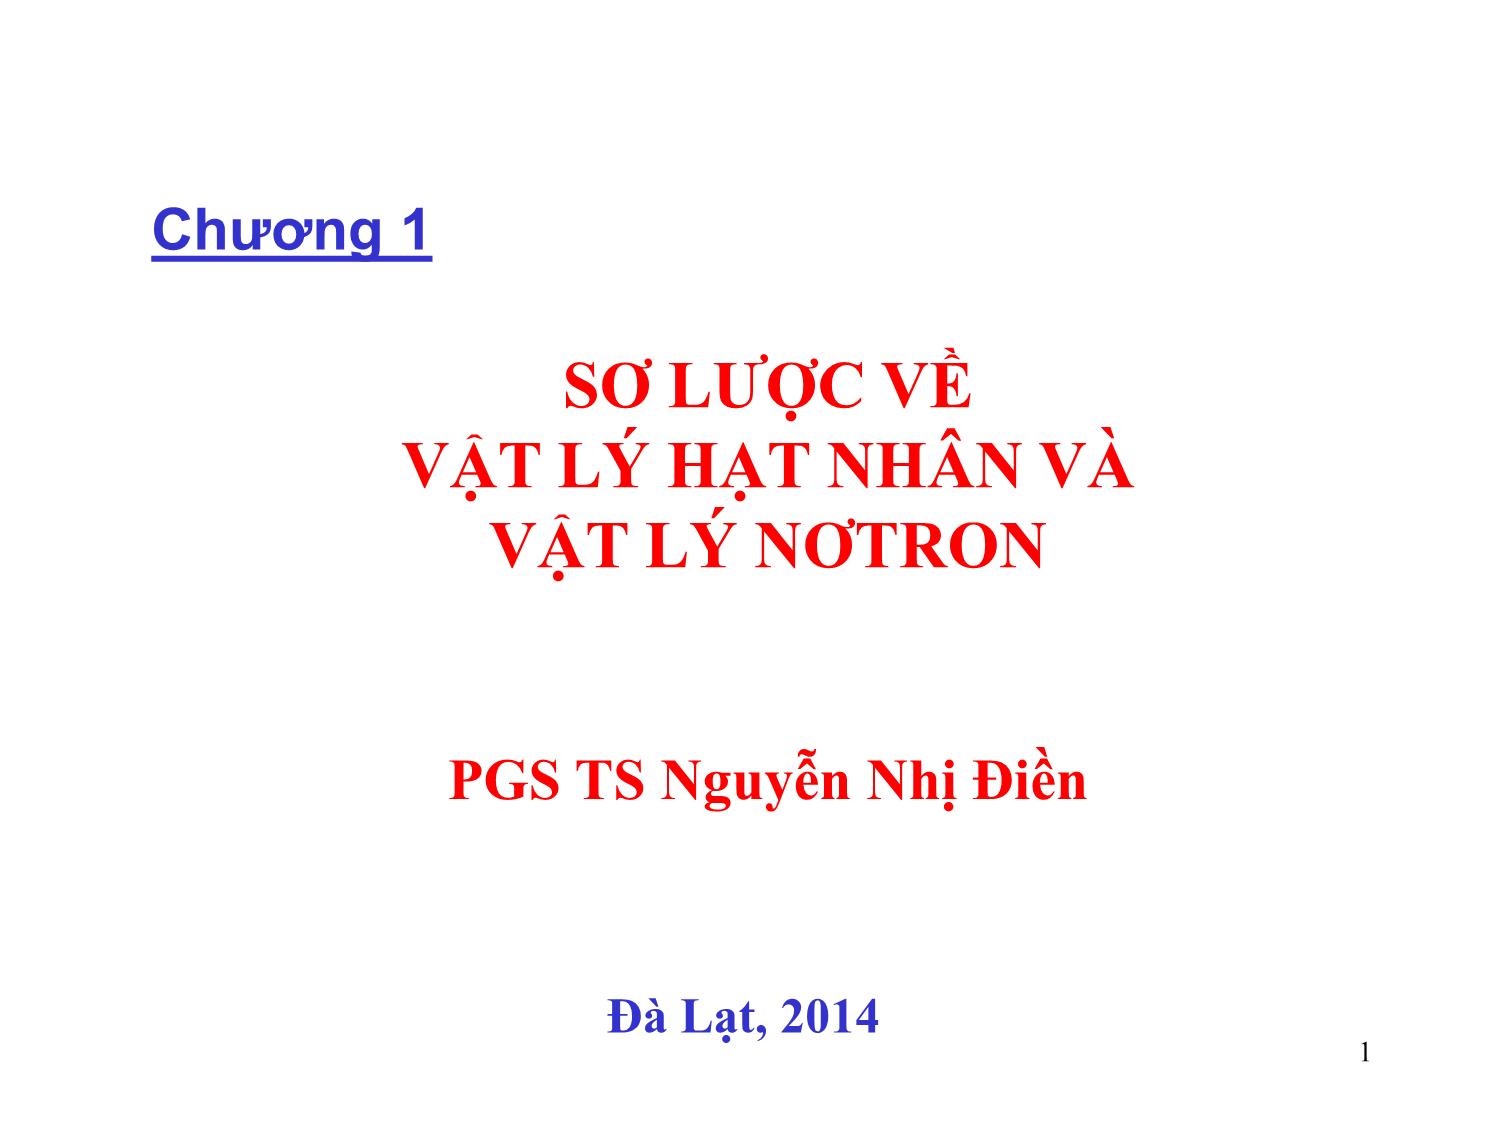 Bài giảng Vật lý hạt nhân và vật lý nơtron - Chương 1: Sơ lược về vật lý hạt nhân và vật lý nơtron - Nguyễn Nhị Điền trang 1